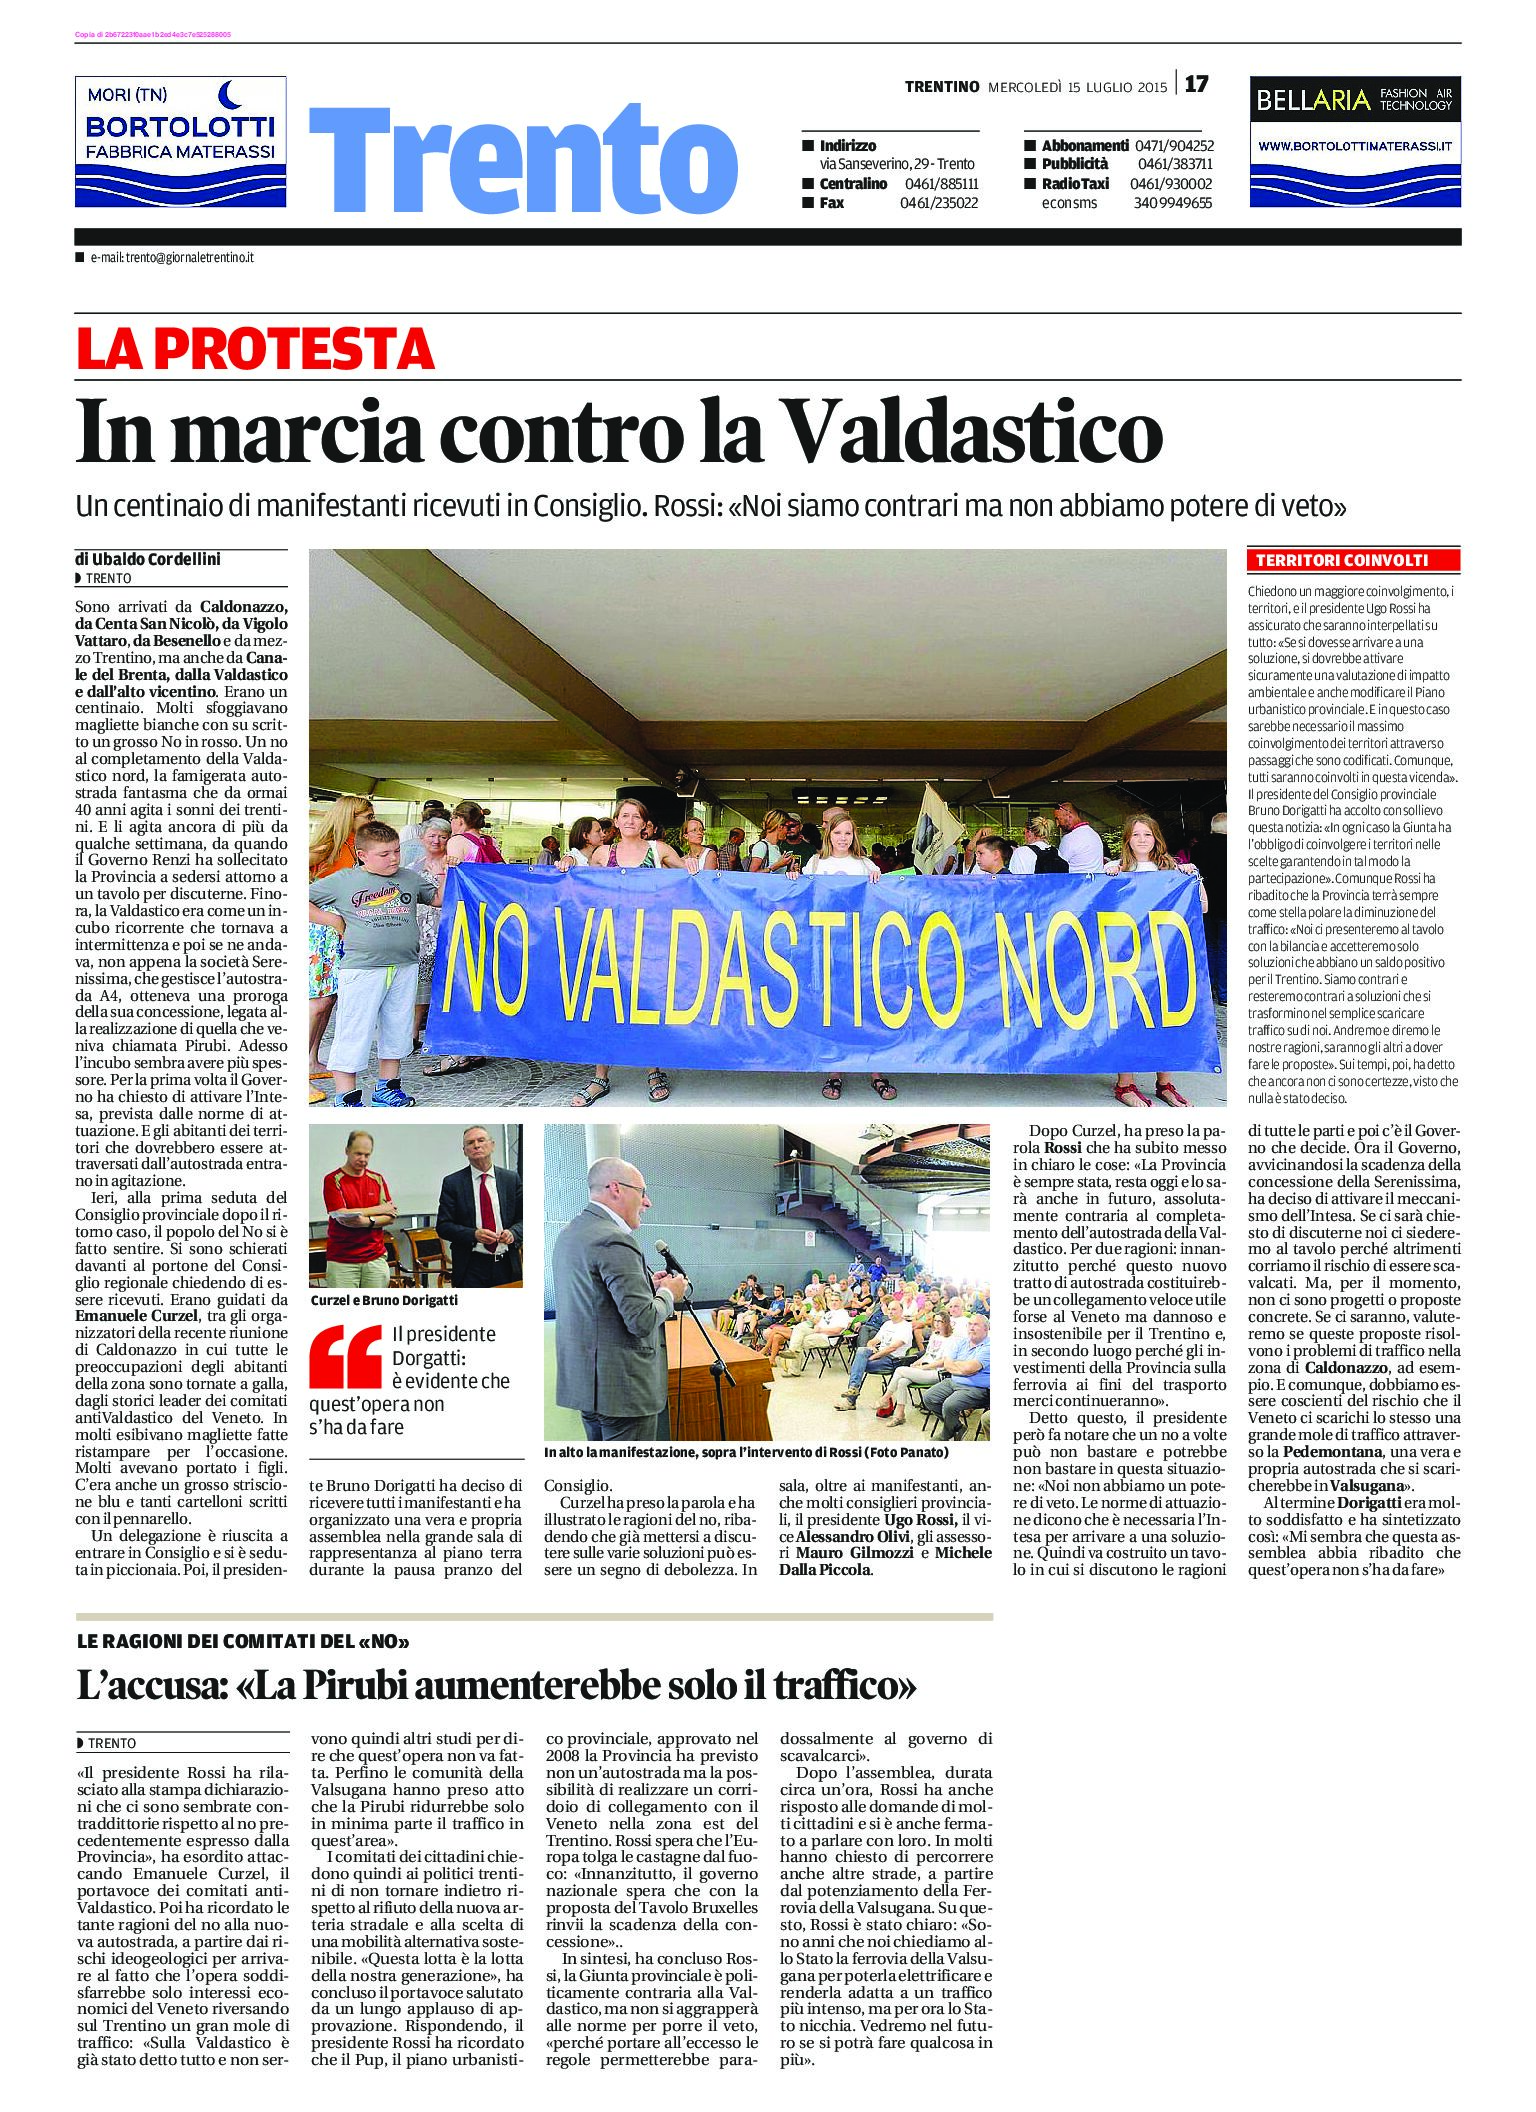 “No Valdastico Nord”: i Comitati del no in marcia a Trento da Rossi